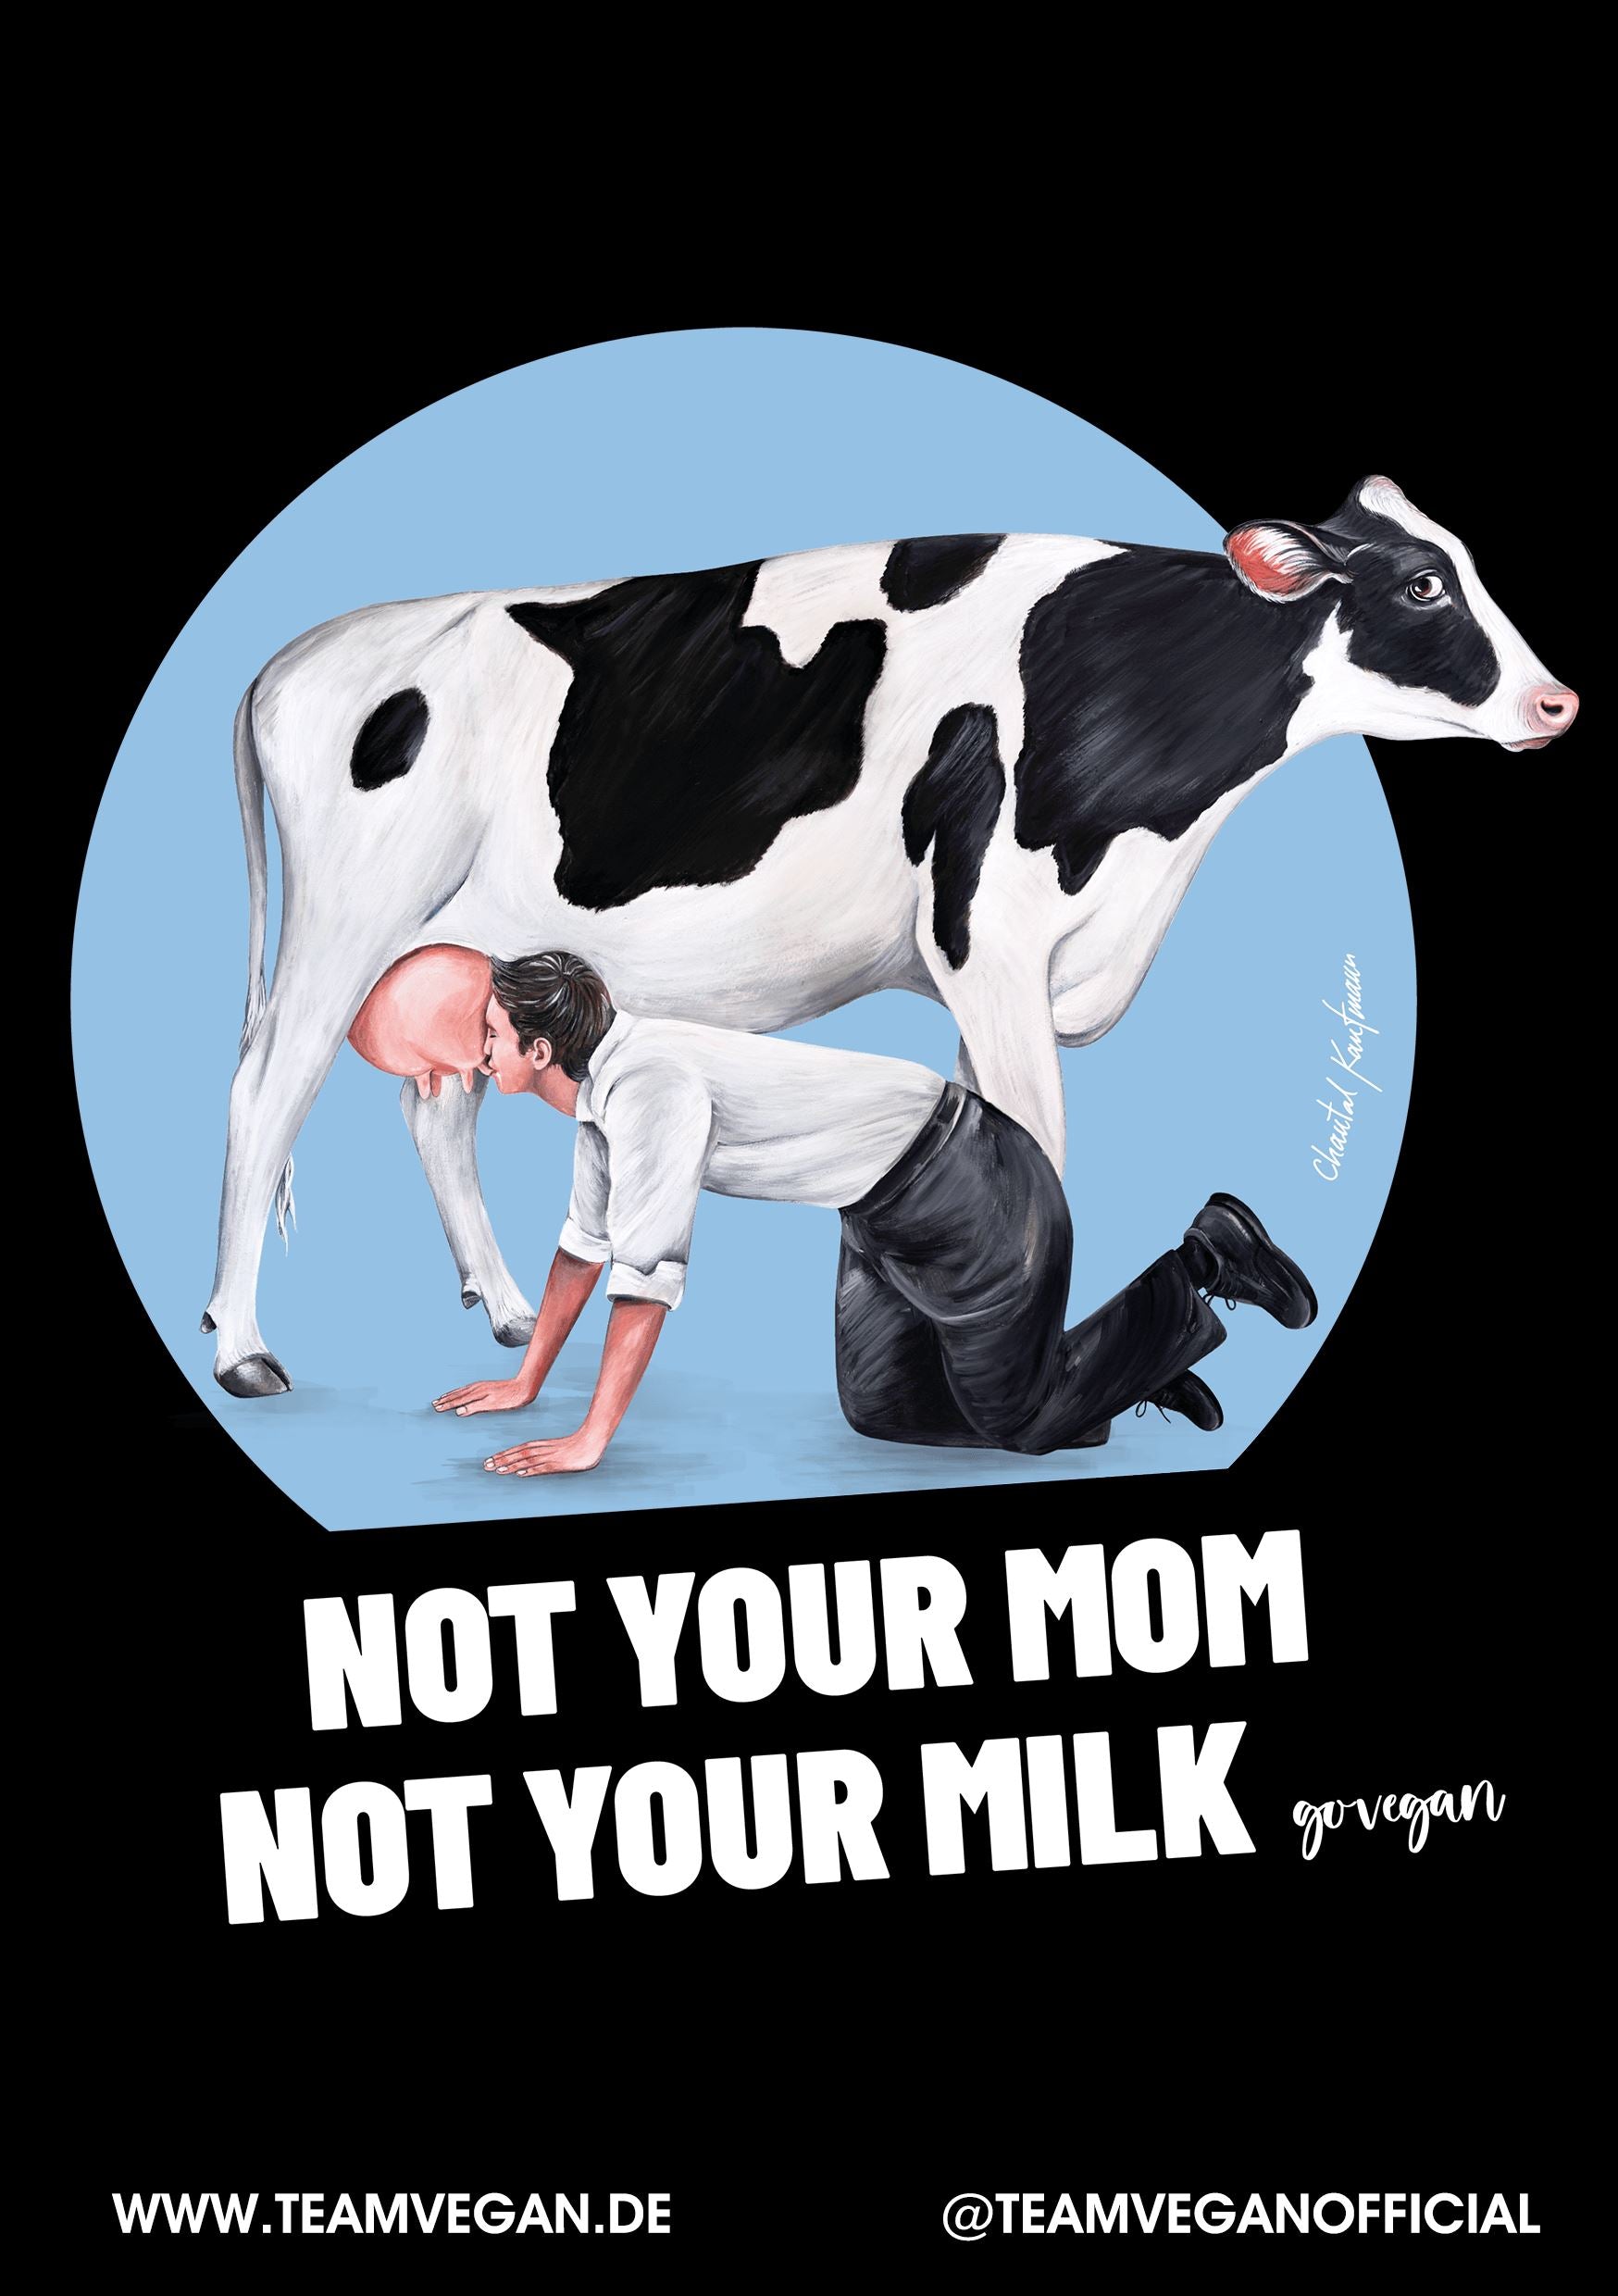 Not Your Mom [Chantal Kaufmann] - 20 Sticker 72--Accessoires Shirtee 7.4 x 10.5 